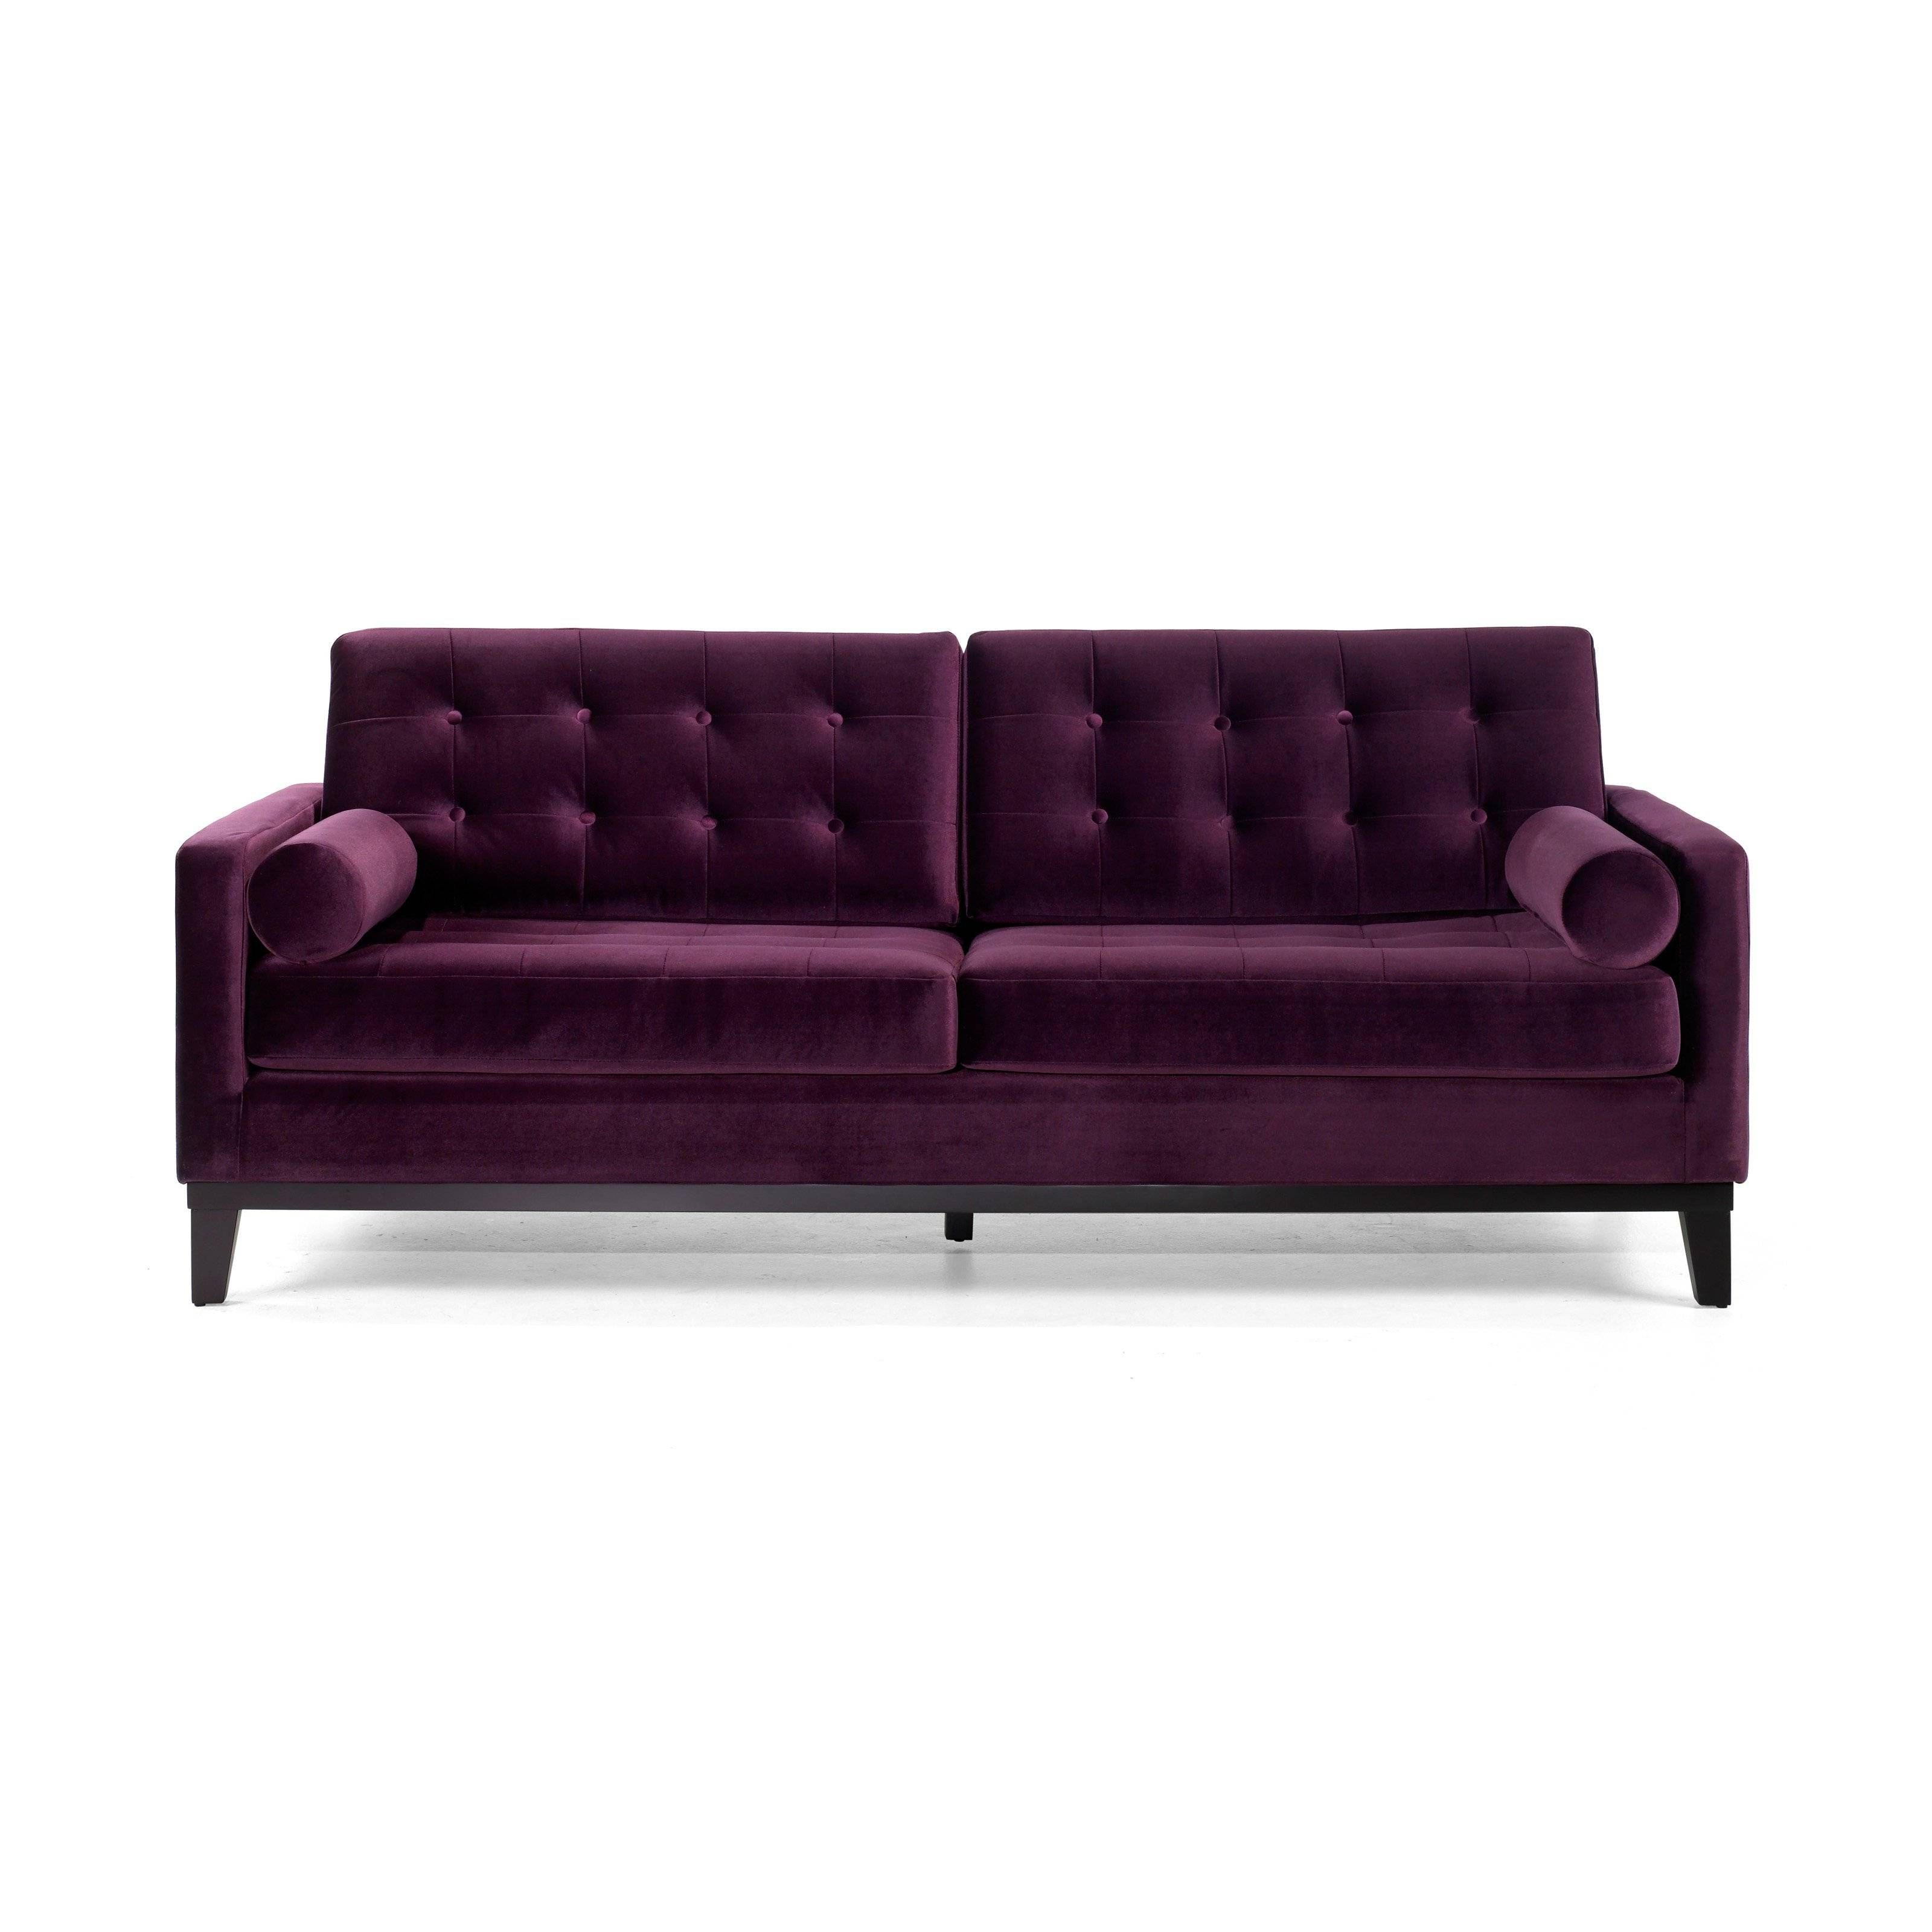 Armen Living Centennial Purple Velvet Sofa | Hayneedle Within Velvet Purple Sofas (View 29 of 30)